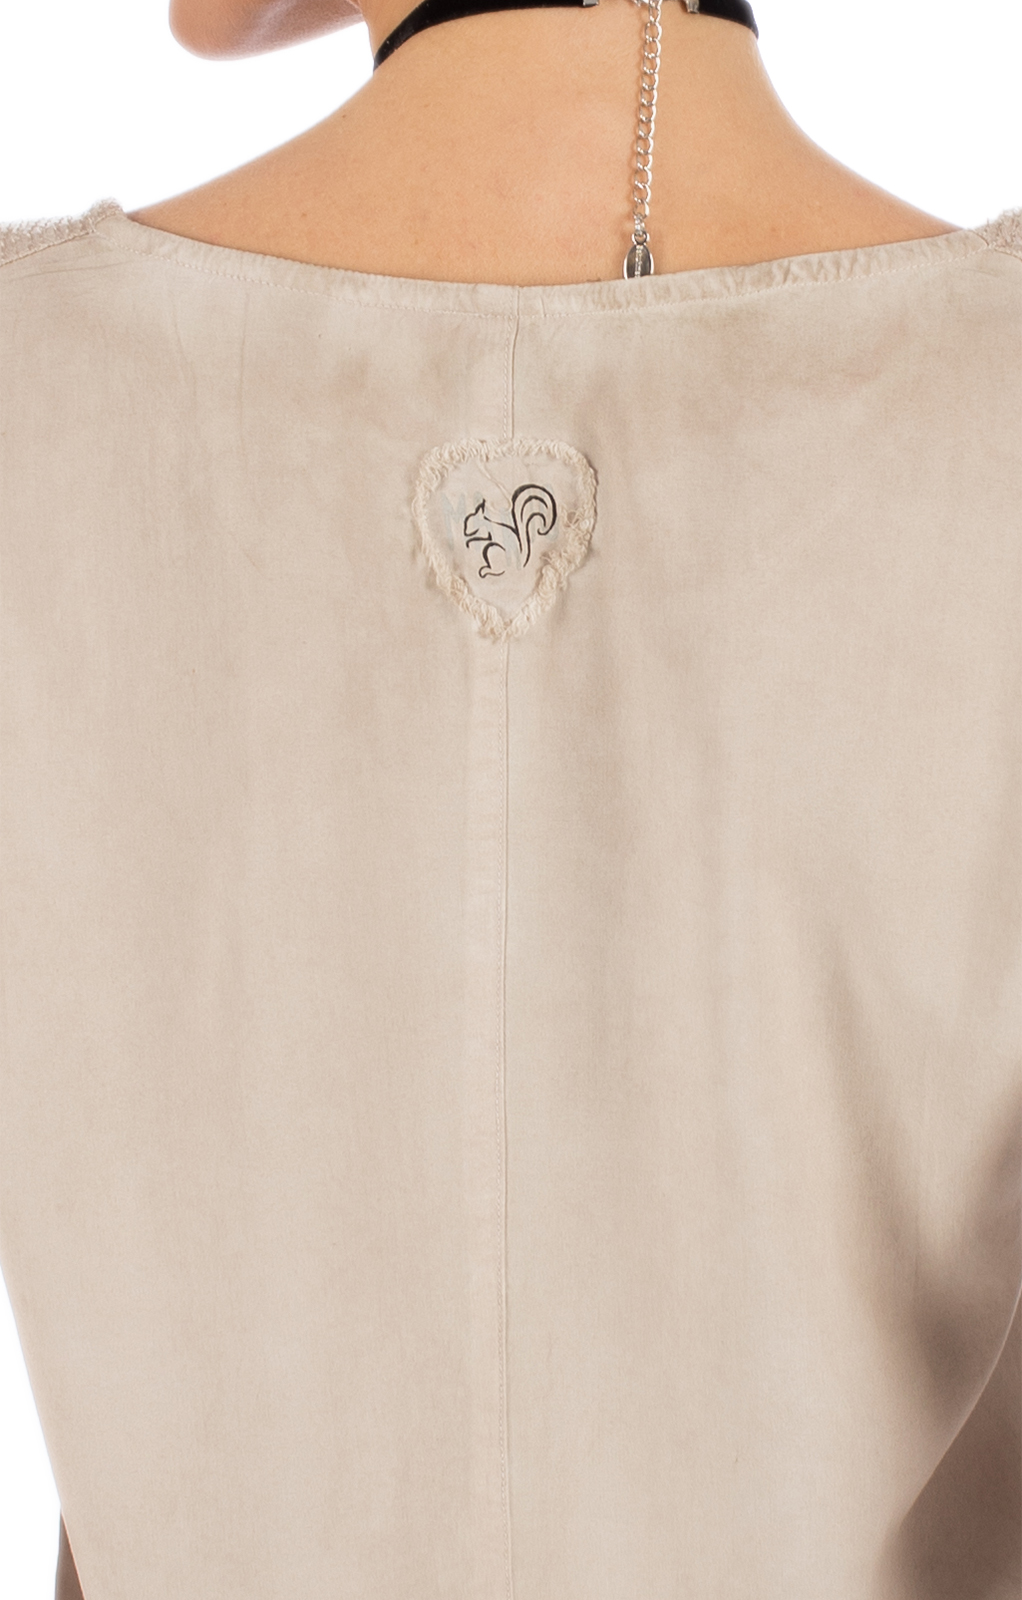 weitere Bilder von Trachten T-Shirt D37 - LUCI beige